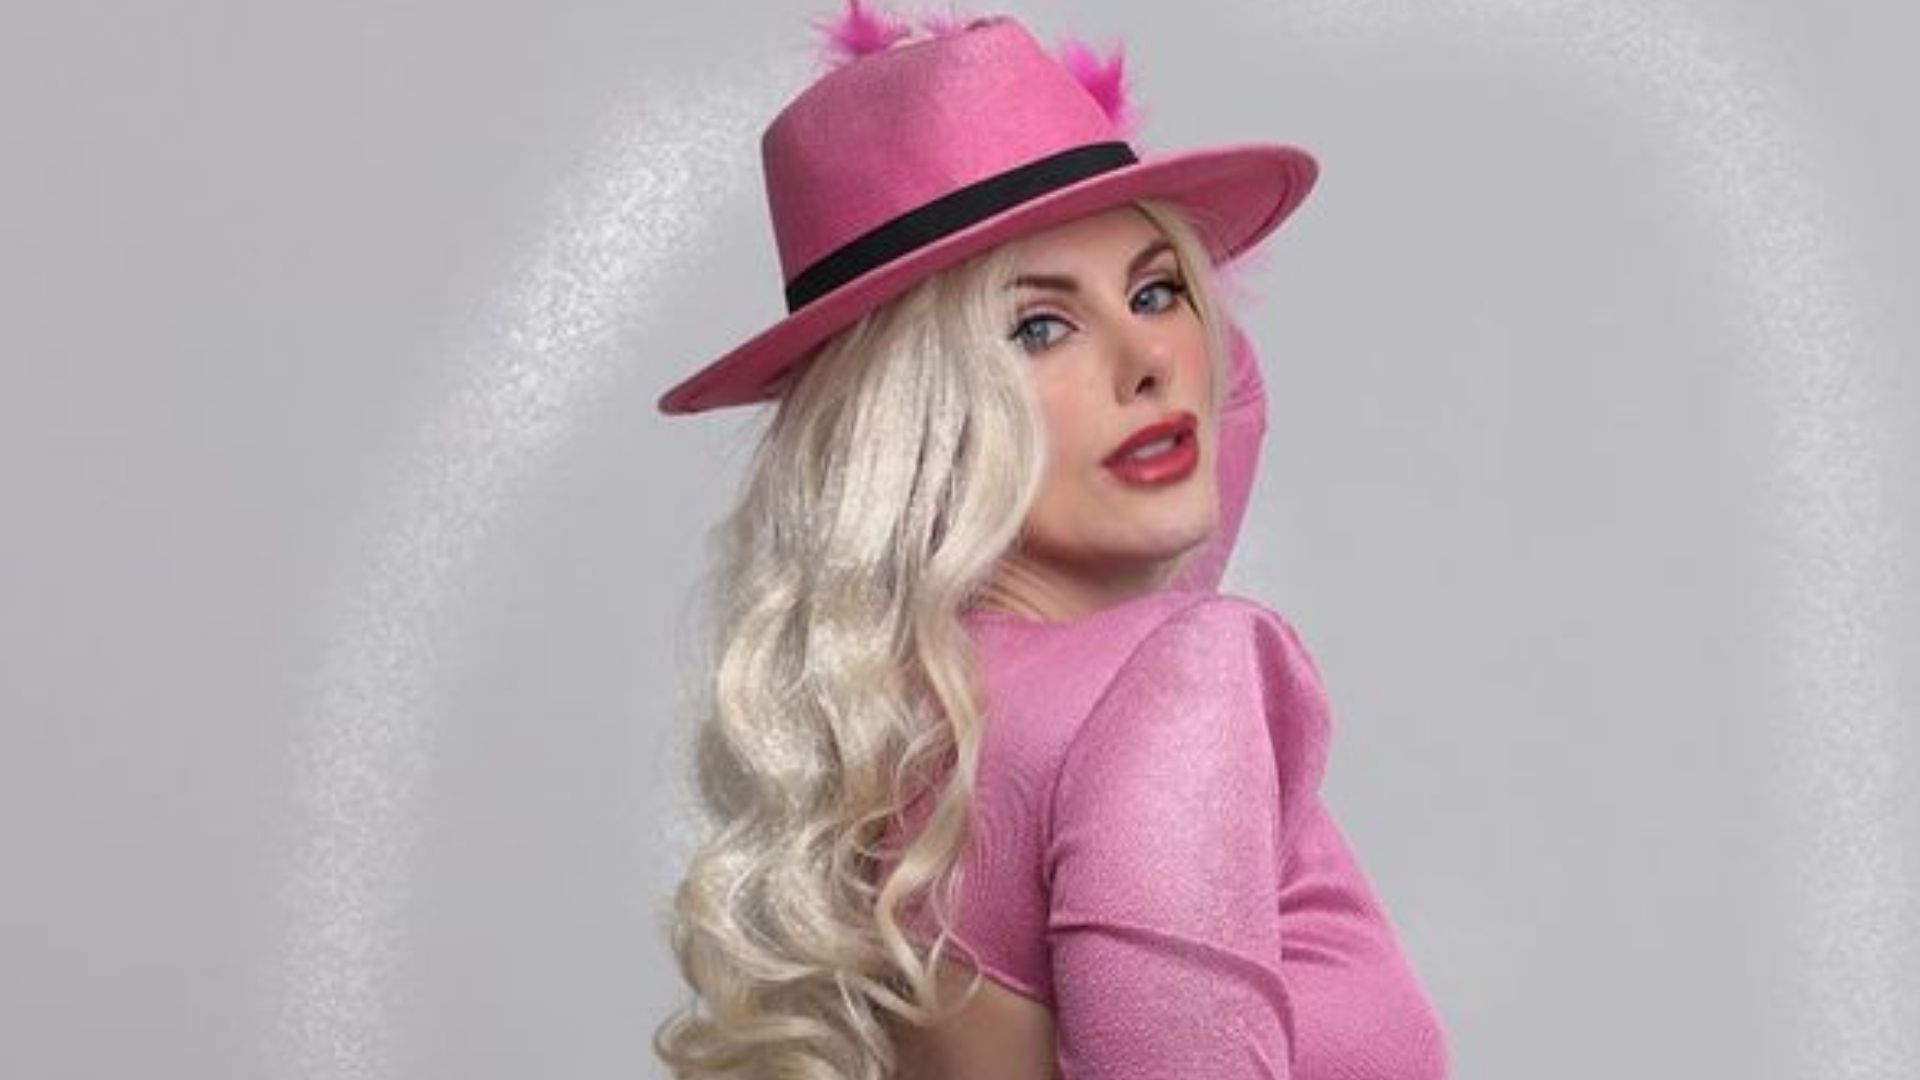 A Barbie do bumbum GG chegou: Deborah Albuquerque faz ensaio de rosa e é comparada com Mulher Melão - Metropolitana FM